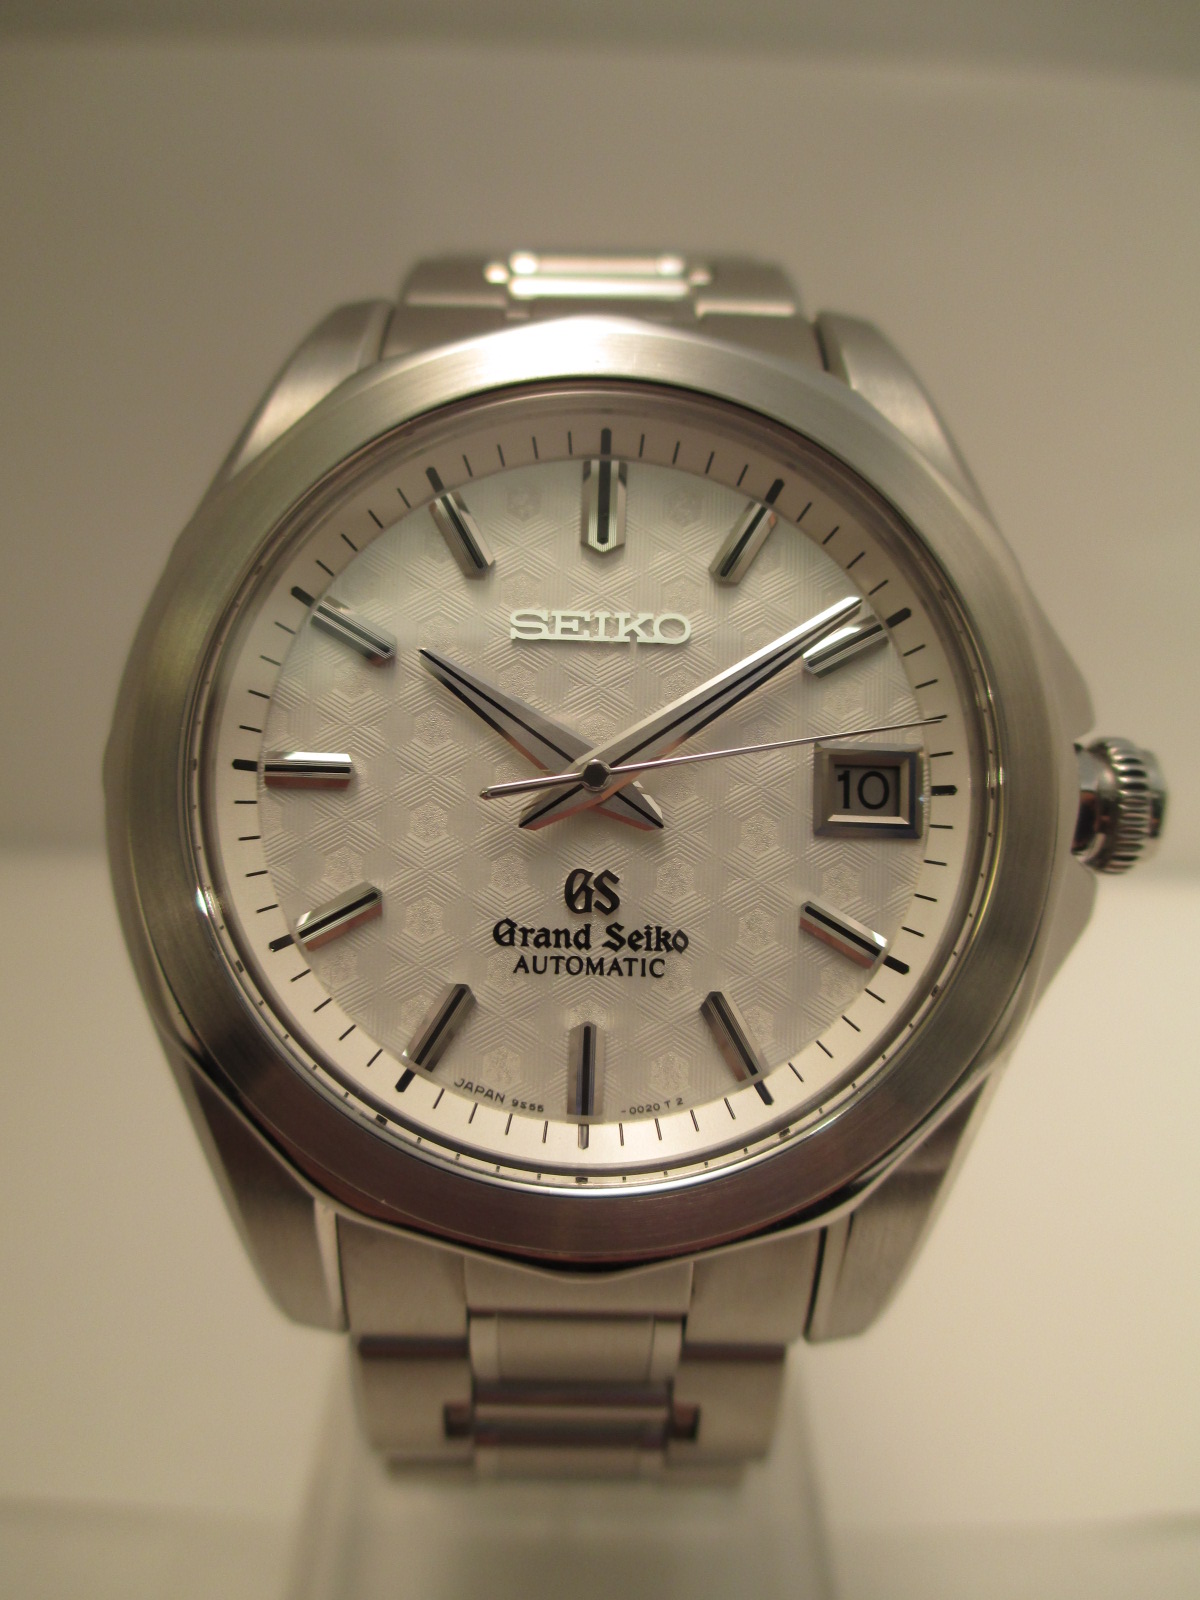 SBGR009 セイコー 40周年記念モデル 300本限定モデルの買取実績 - 時計買取ならGINZA RASIN